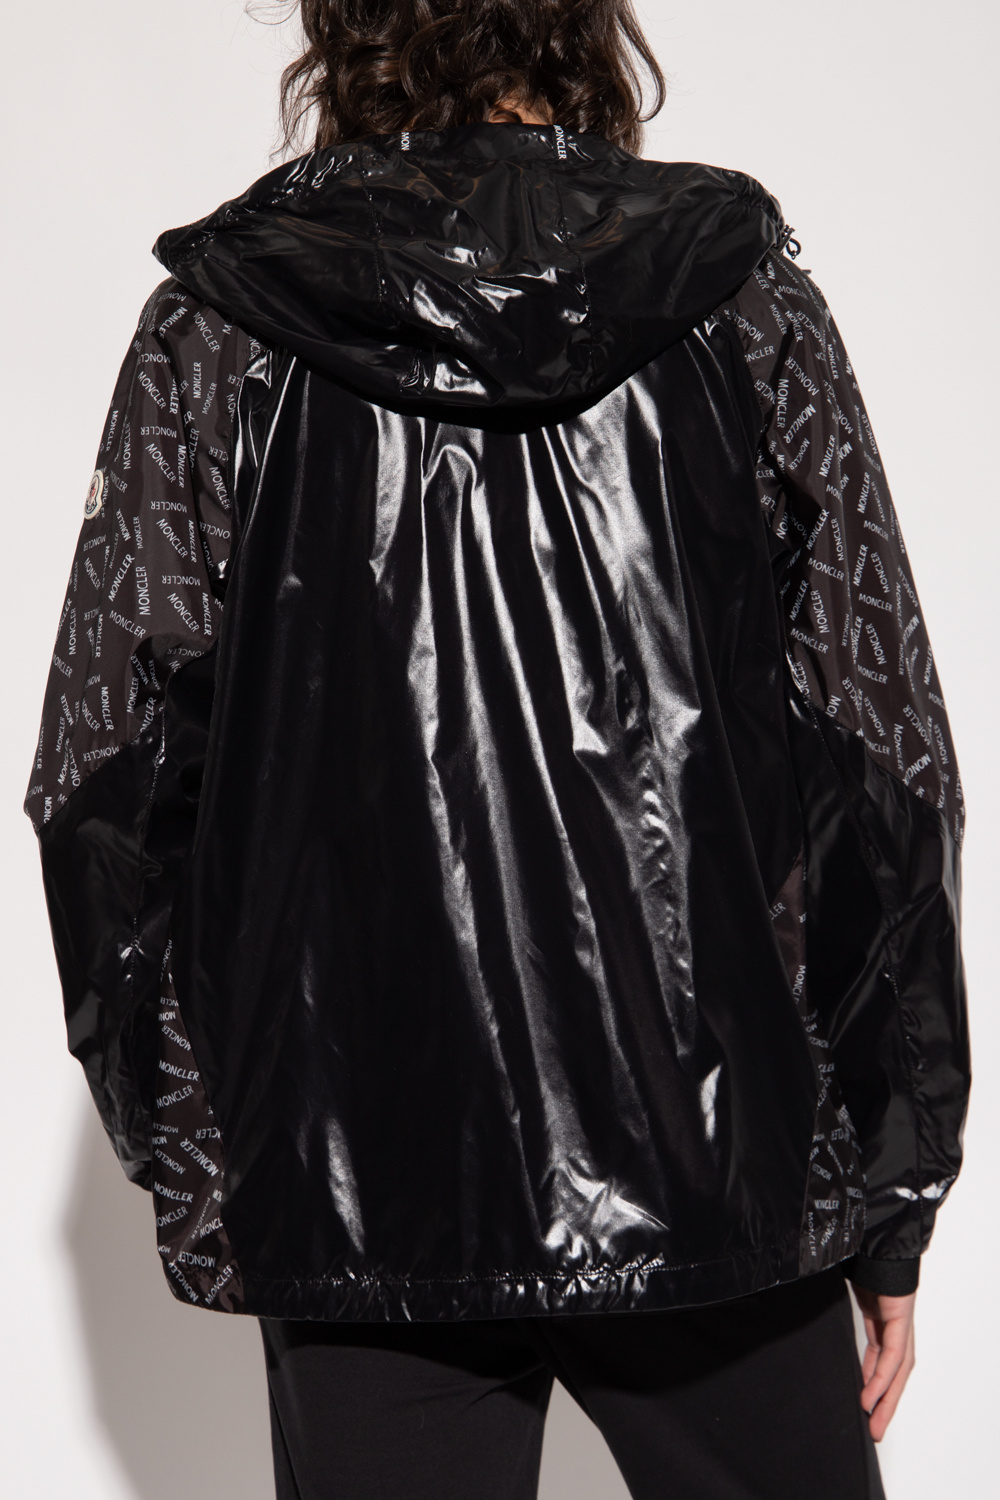 Moncler 'Gidayu' rain jacket | Men's Clothing | Vitkac